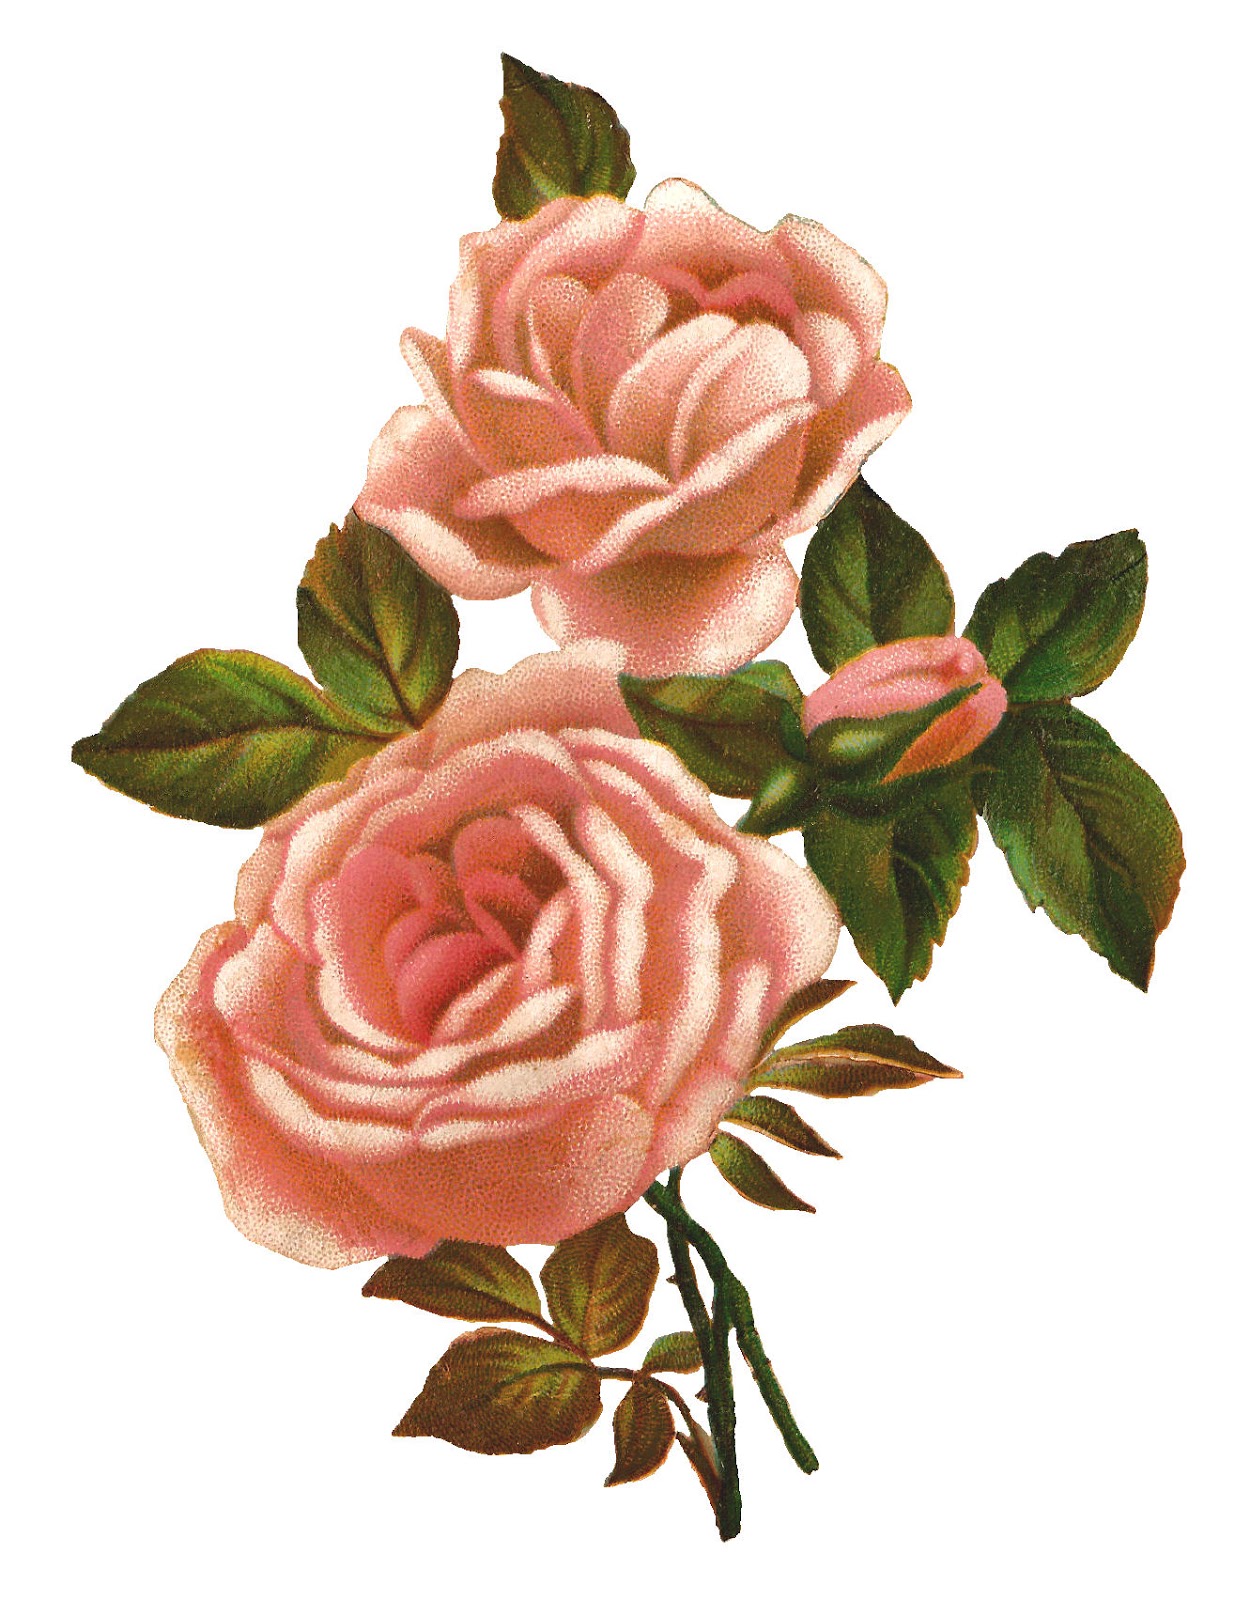 Antique Images: Pink Rose Stock Image Vintage Shabby Flower Clip Art